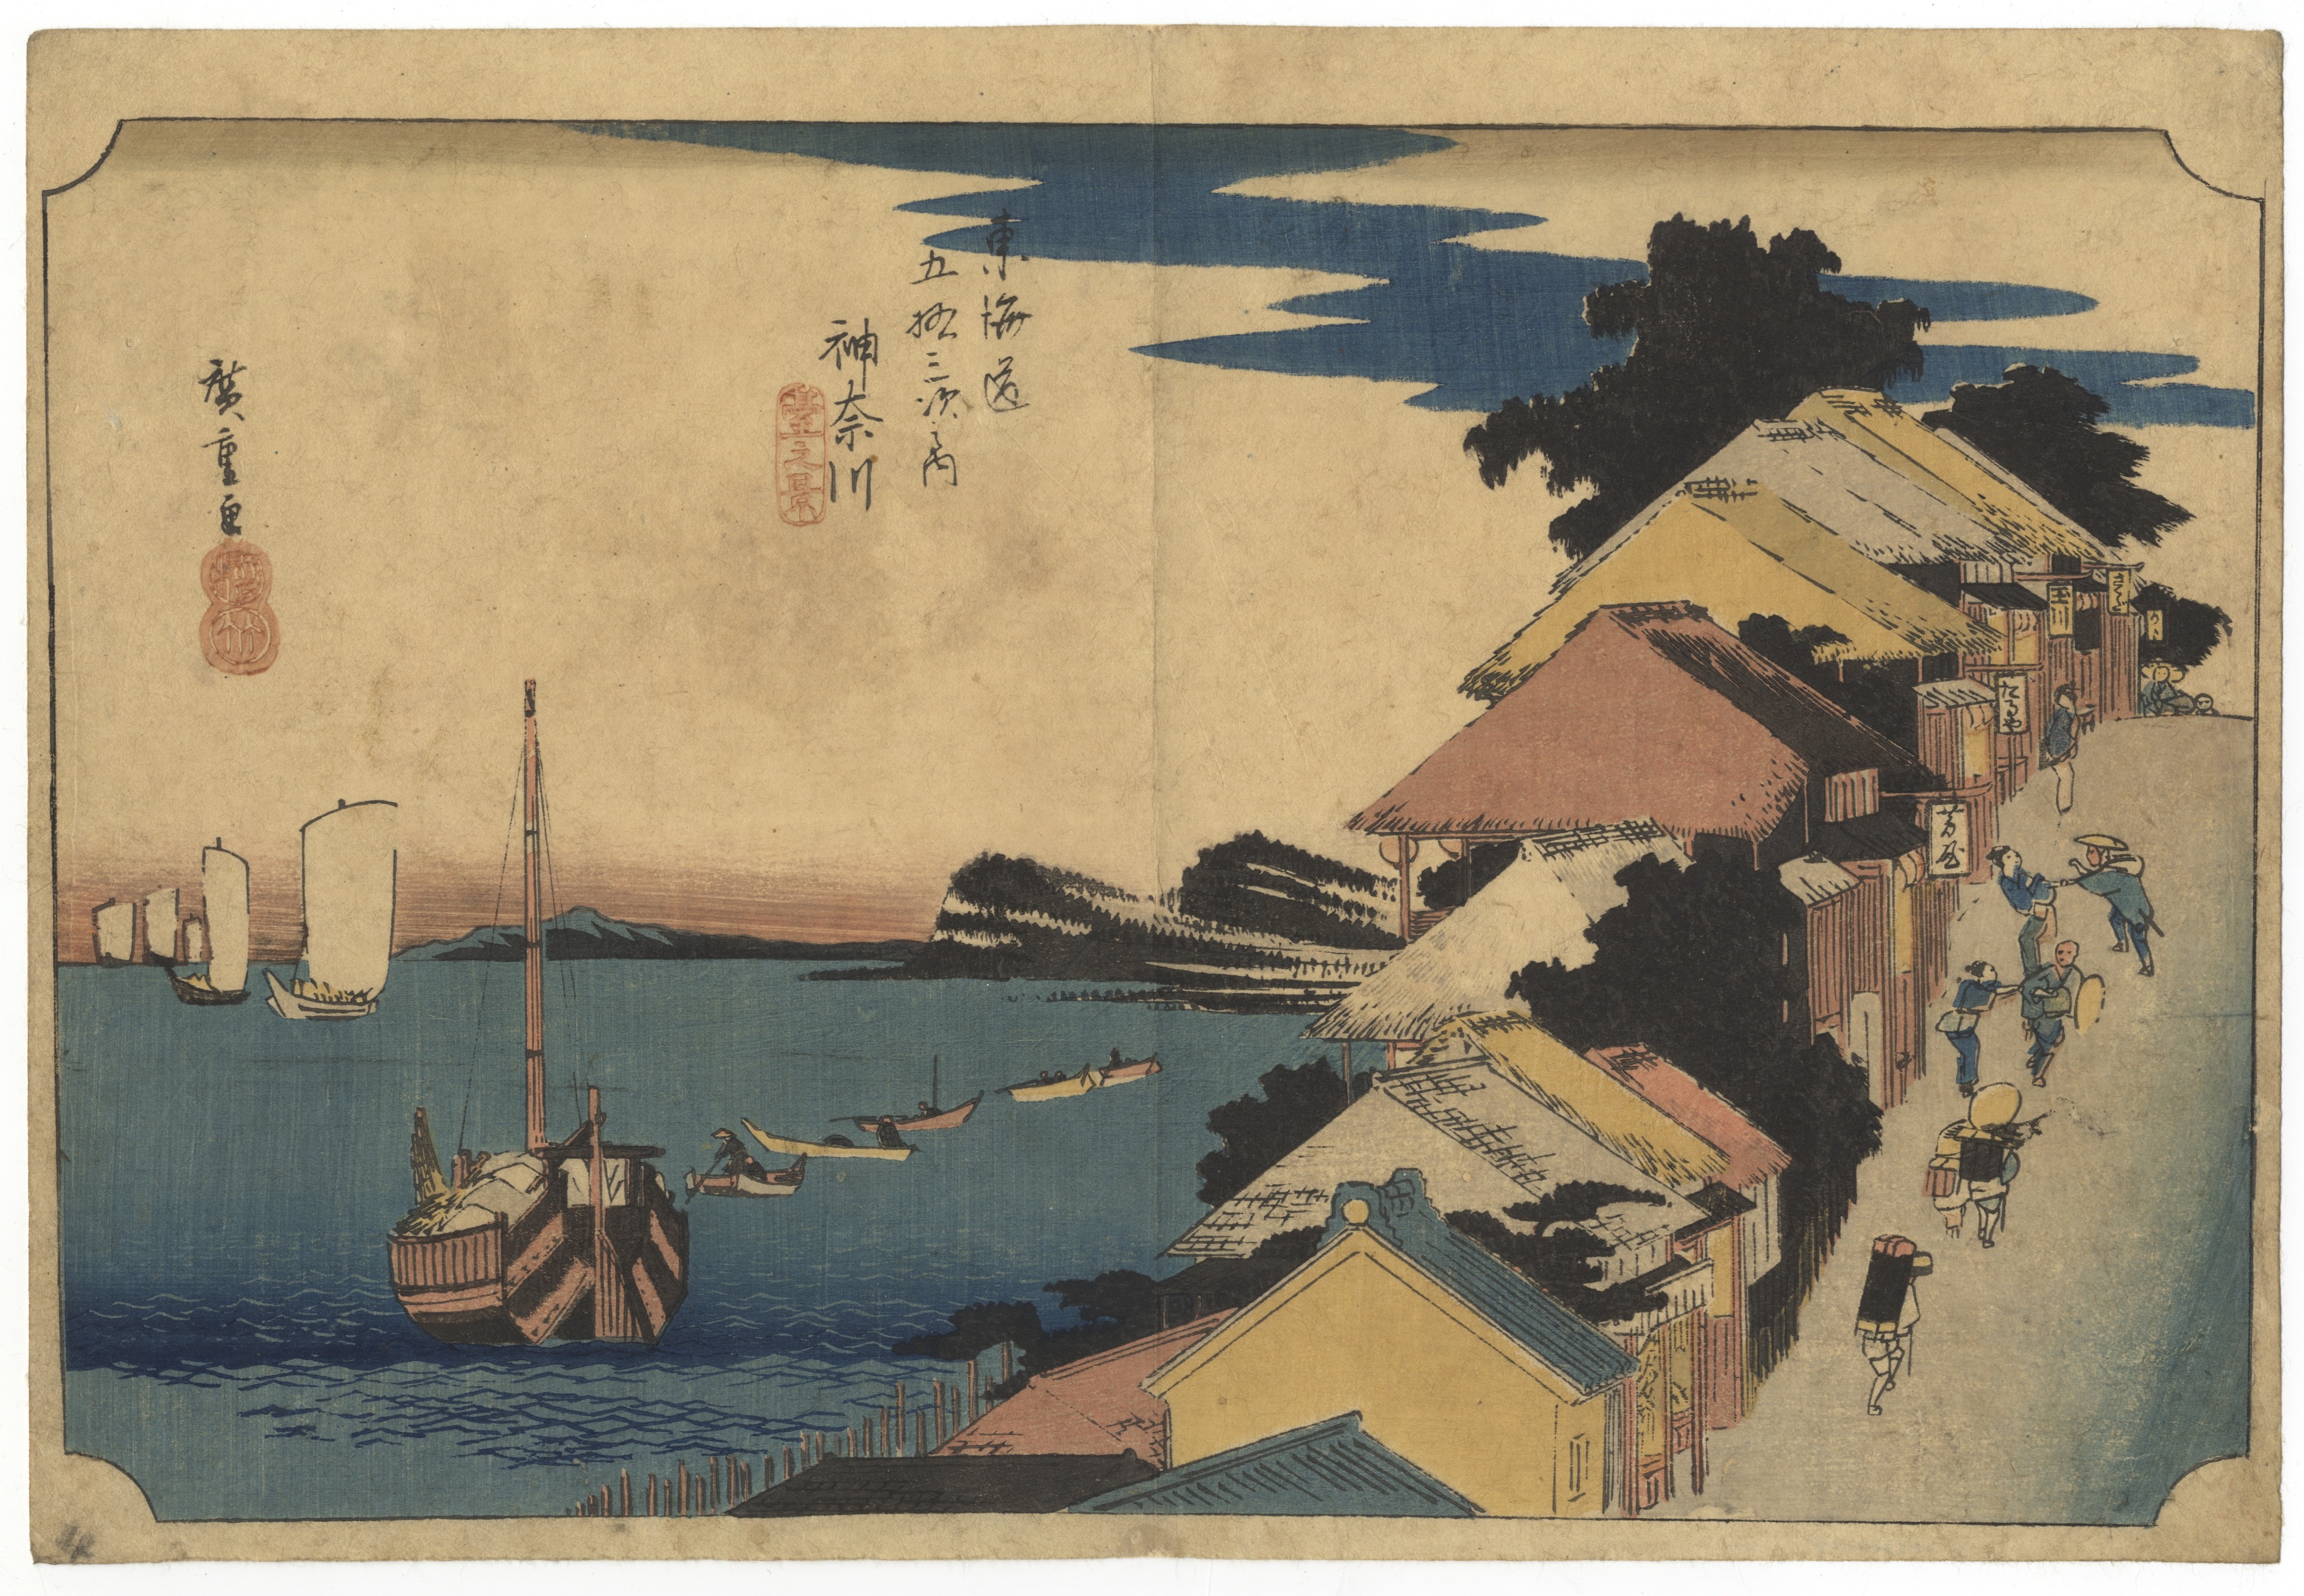 Hiroshige, Tokaido Road, Japanese Woodblock Print